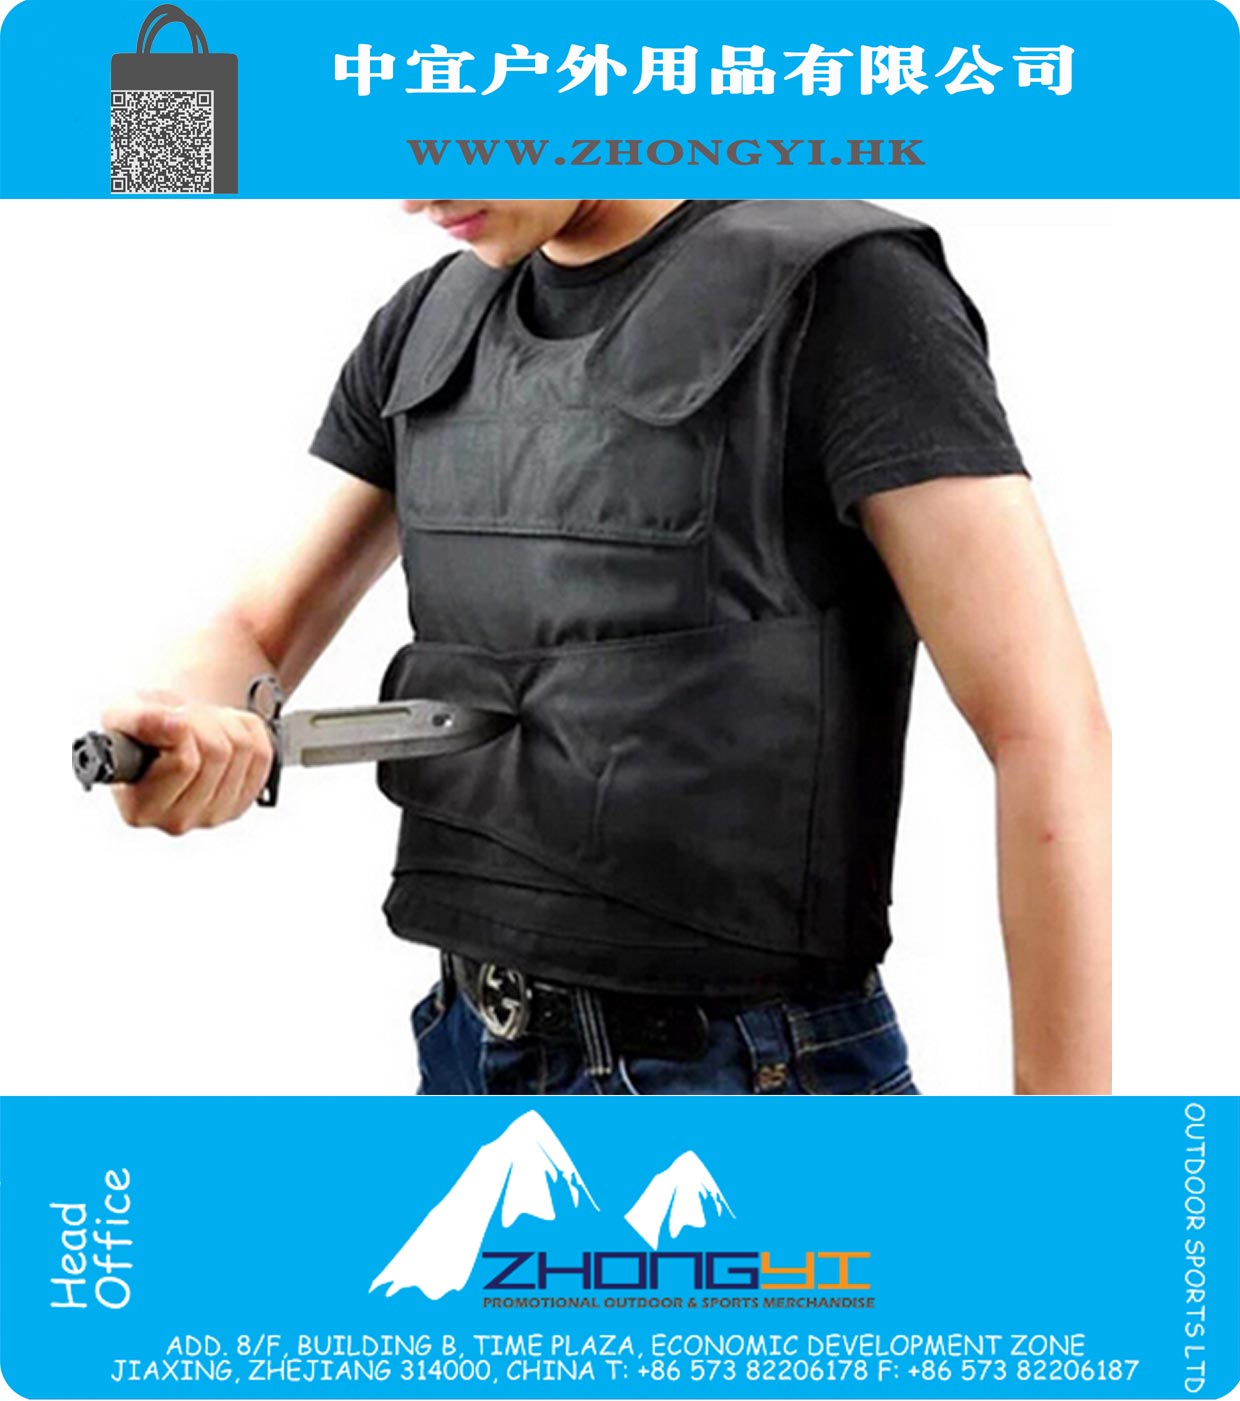 Tactical Vest Men Stab Жилет Анти инструмент Адаптированная версия бронежилет пластина службы оборудования колото открытый самозащиту